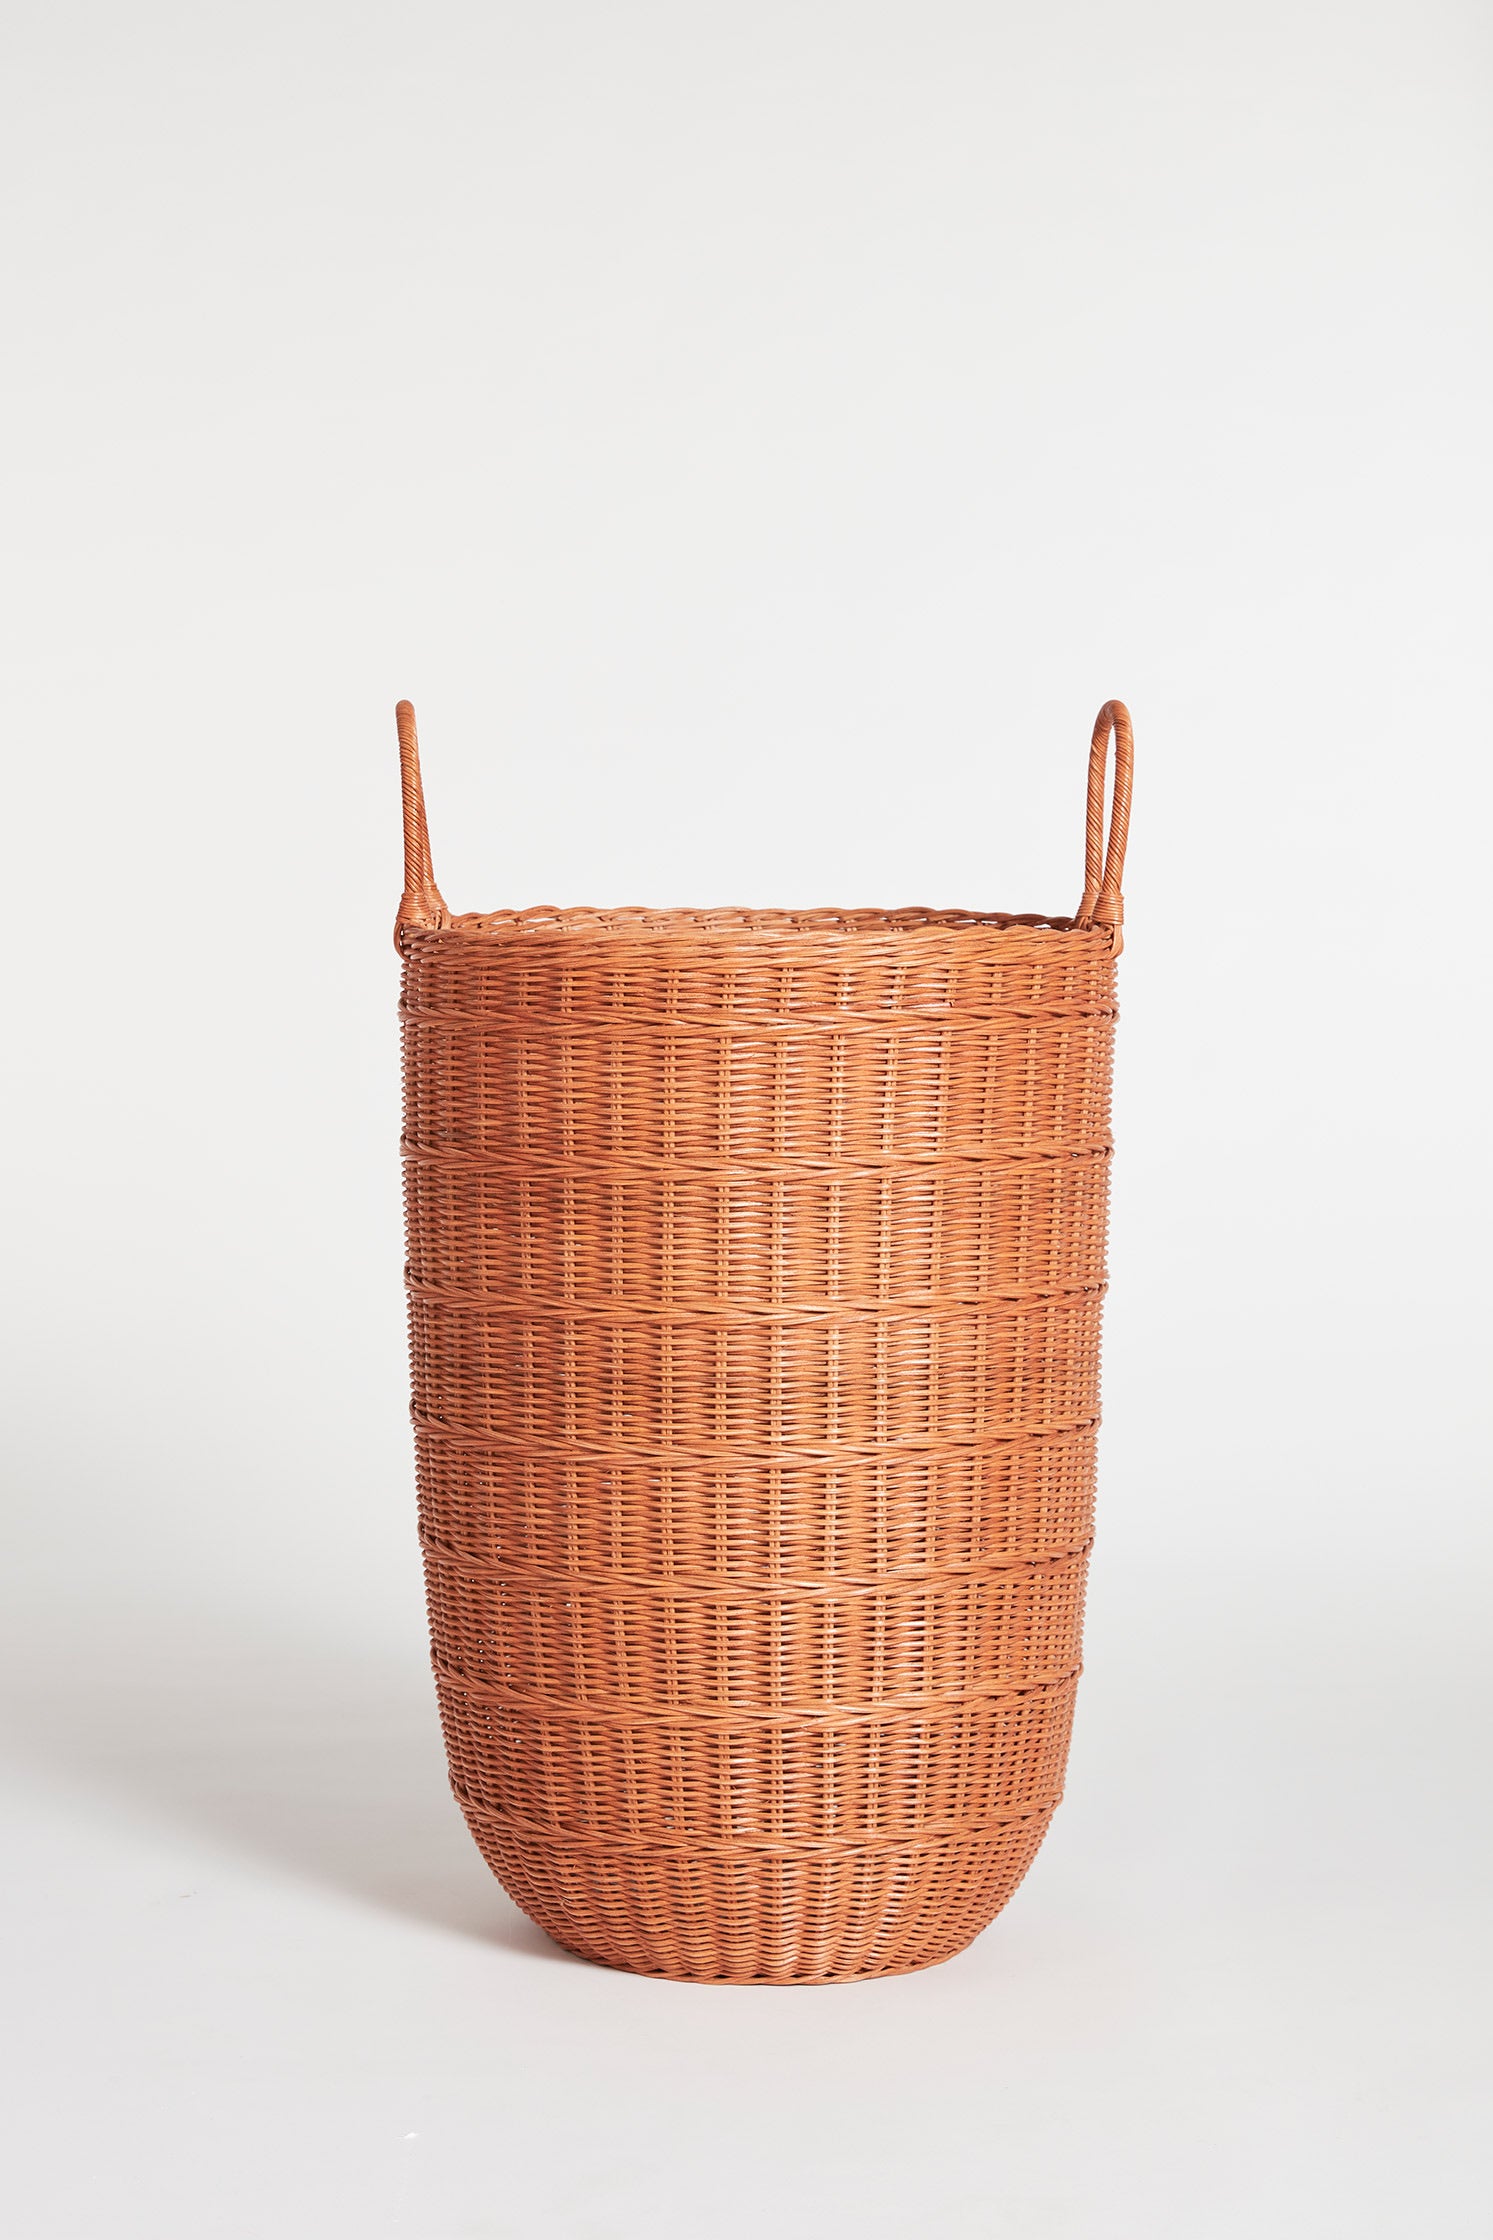 The Field Basket in Tan